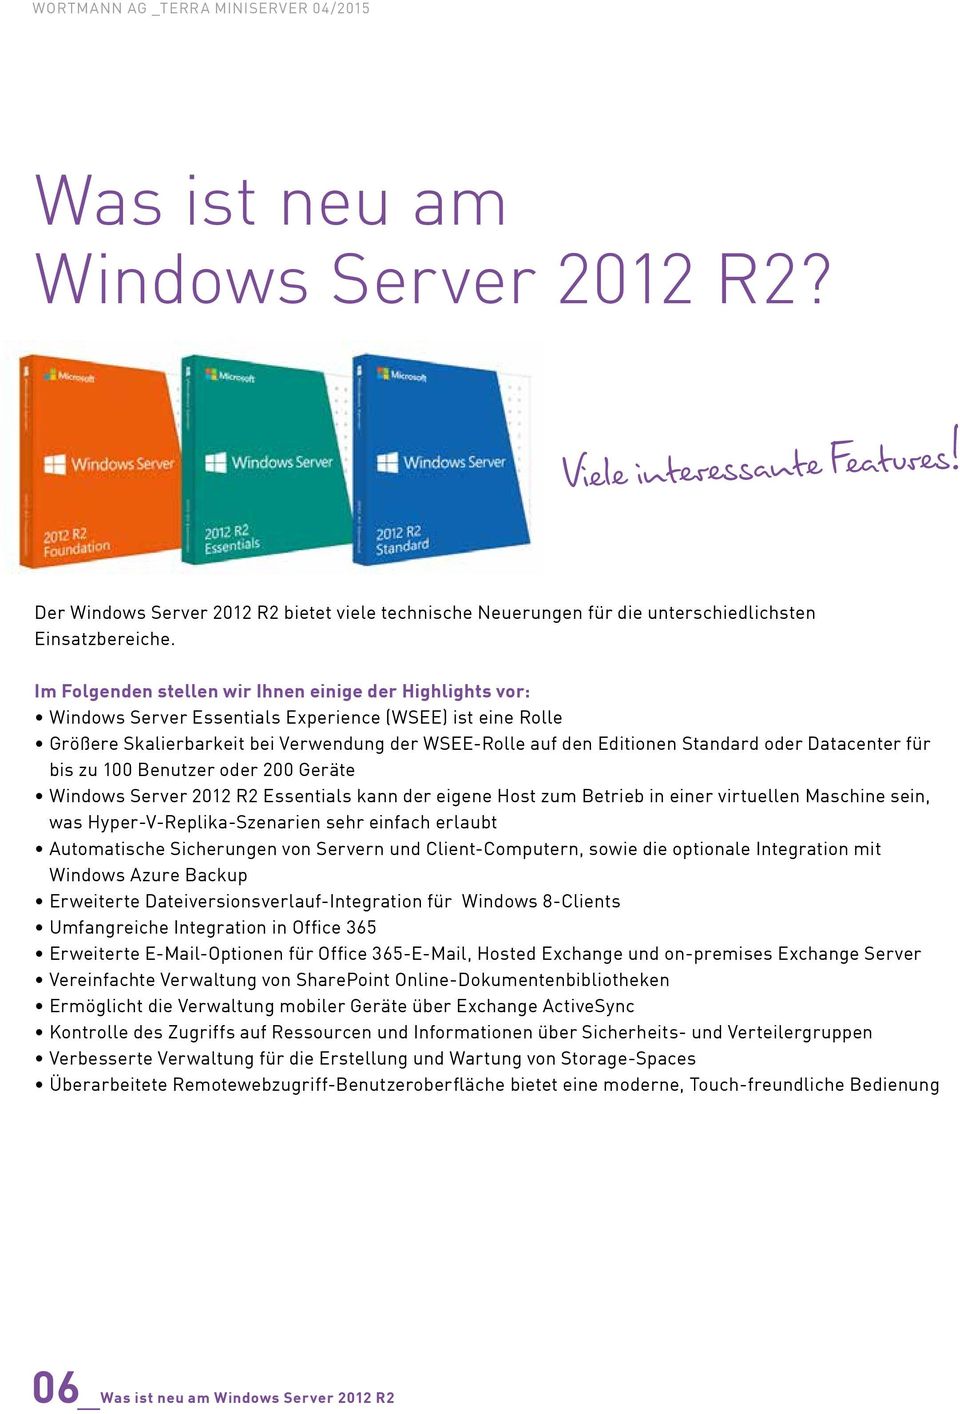 oder Datacenter für bis zu 100 Benutzer oder 200 Geräte Windows Server 2012 R2 Essentials kann der eigene Host zum Betrieb in einer virtuellen Maschine sein, was Hyper-V-Replika-Szenarien sehr